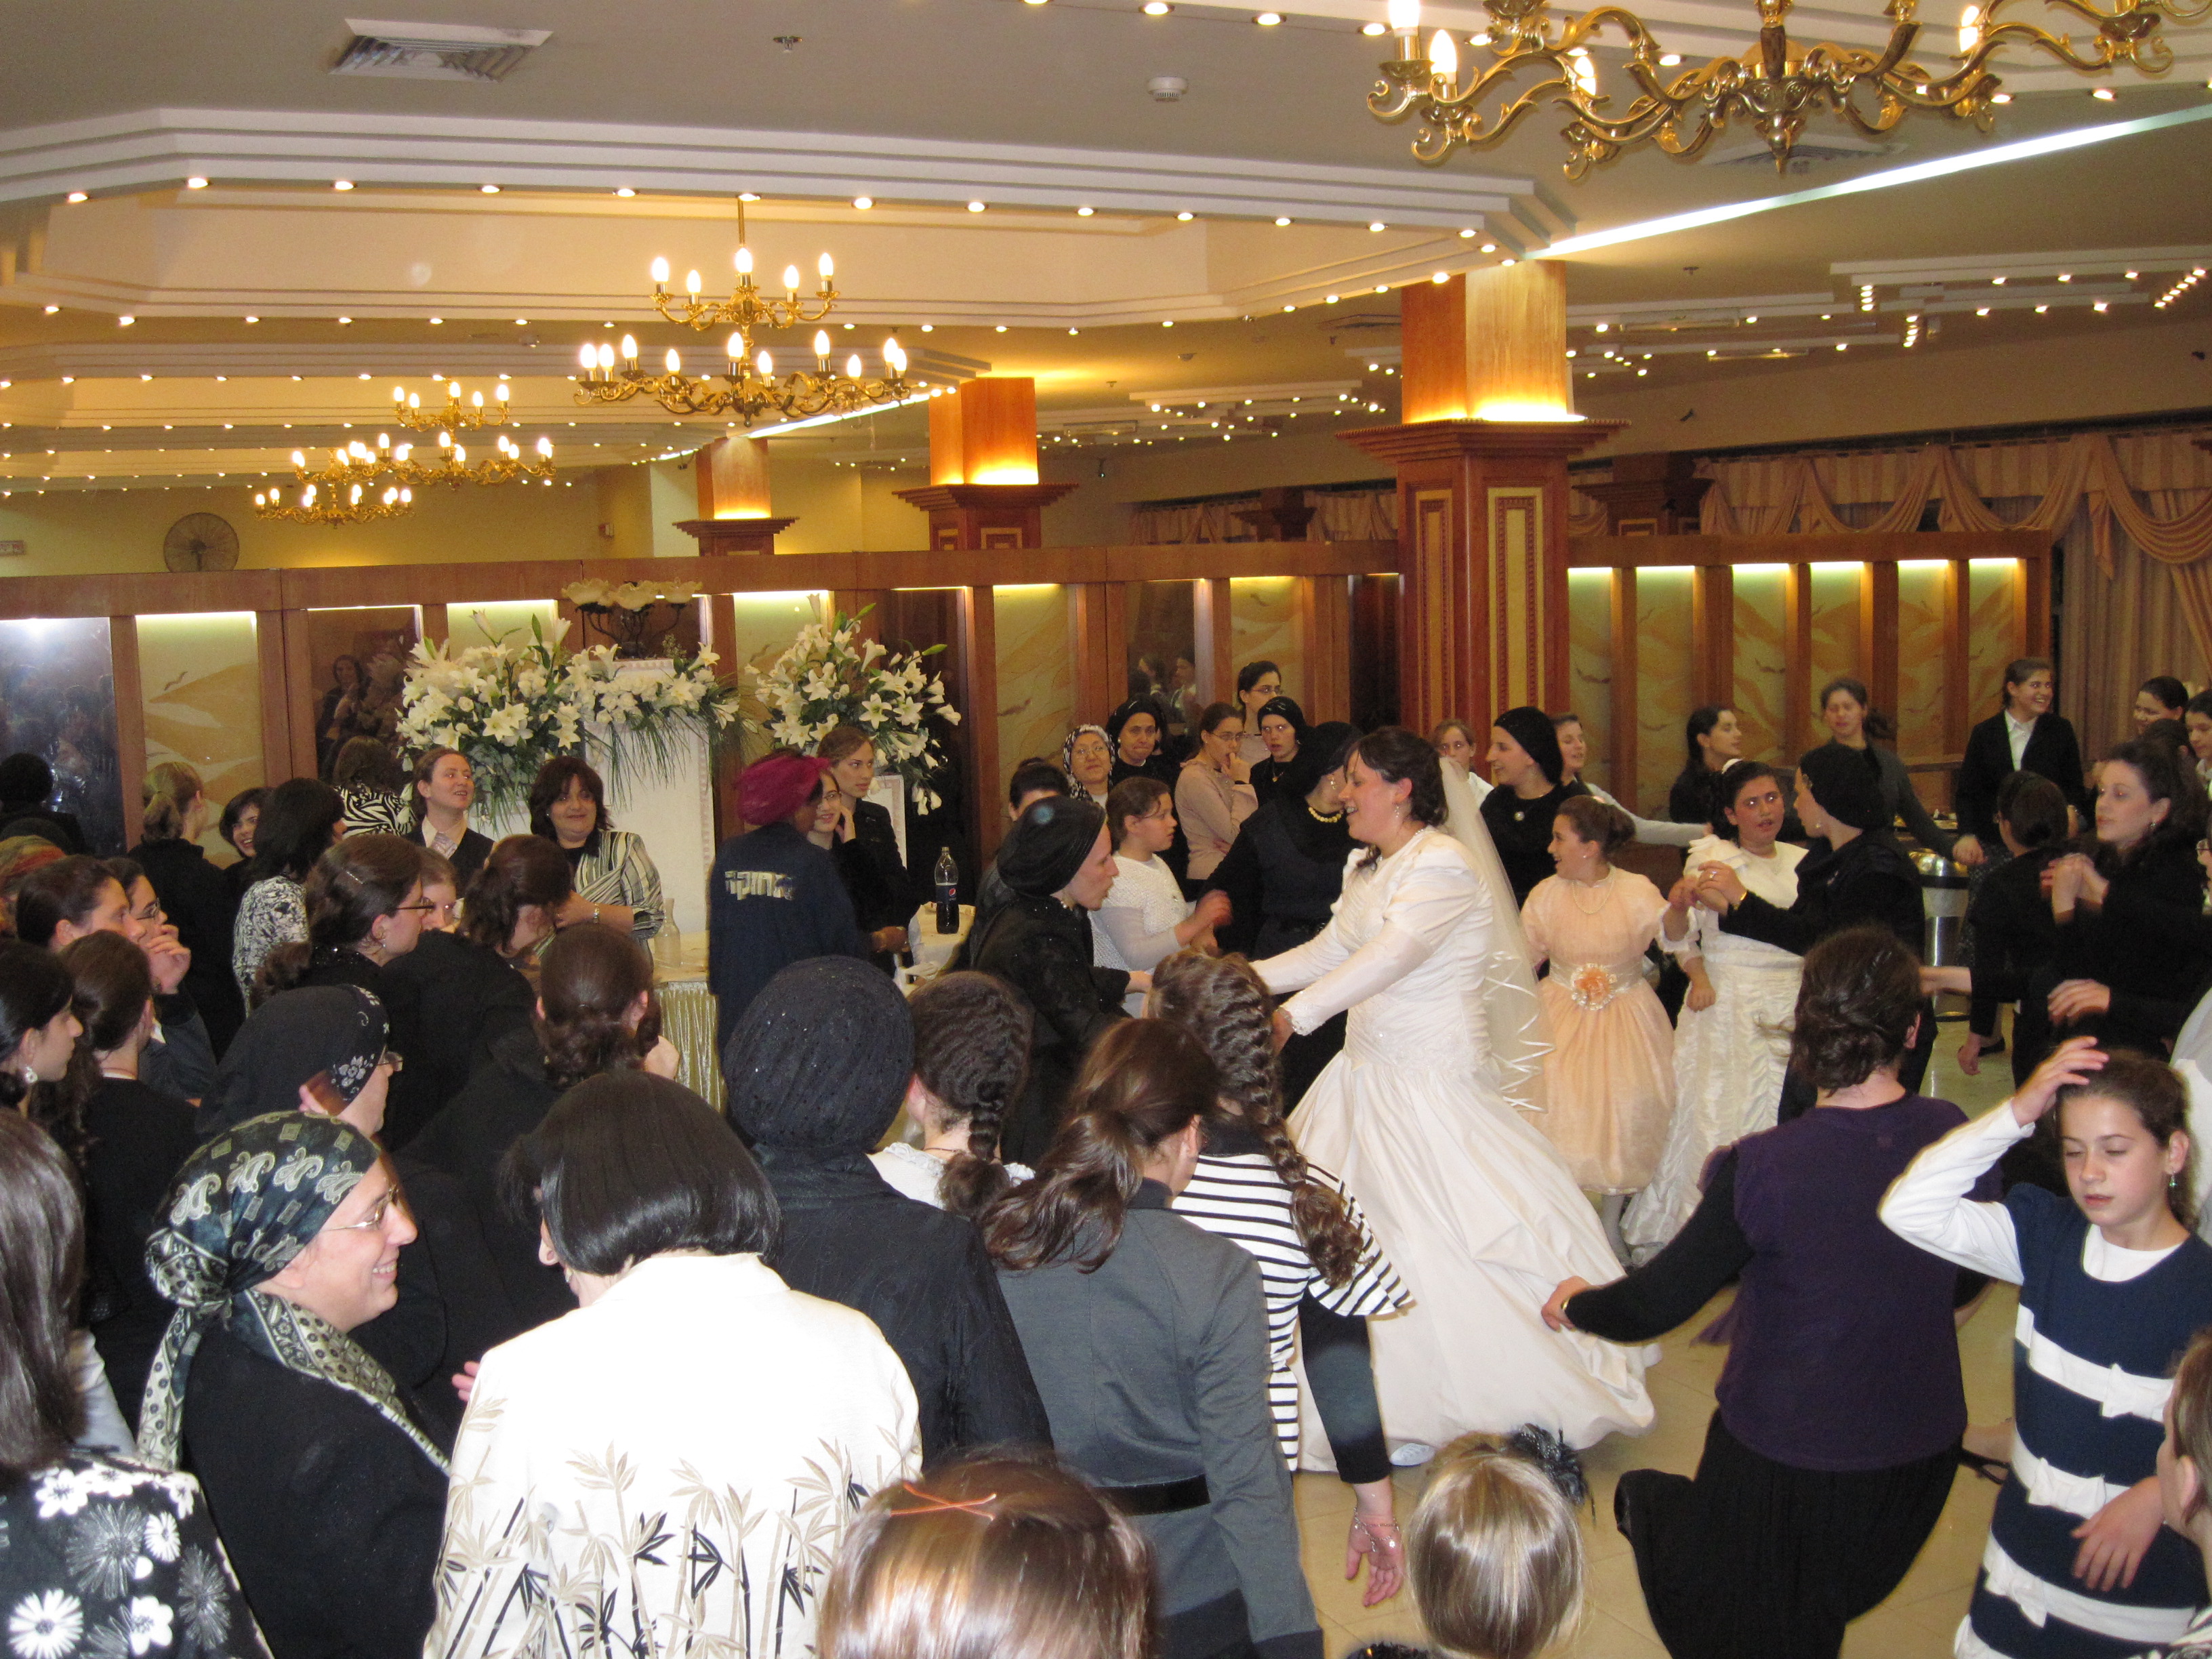 http://upload.wikimedia.org/wikipedia/commons/6/68/Armonot_Wolf_wedding%2C_Jerusalem.jpg